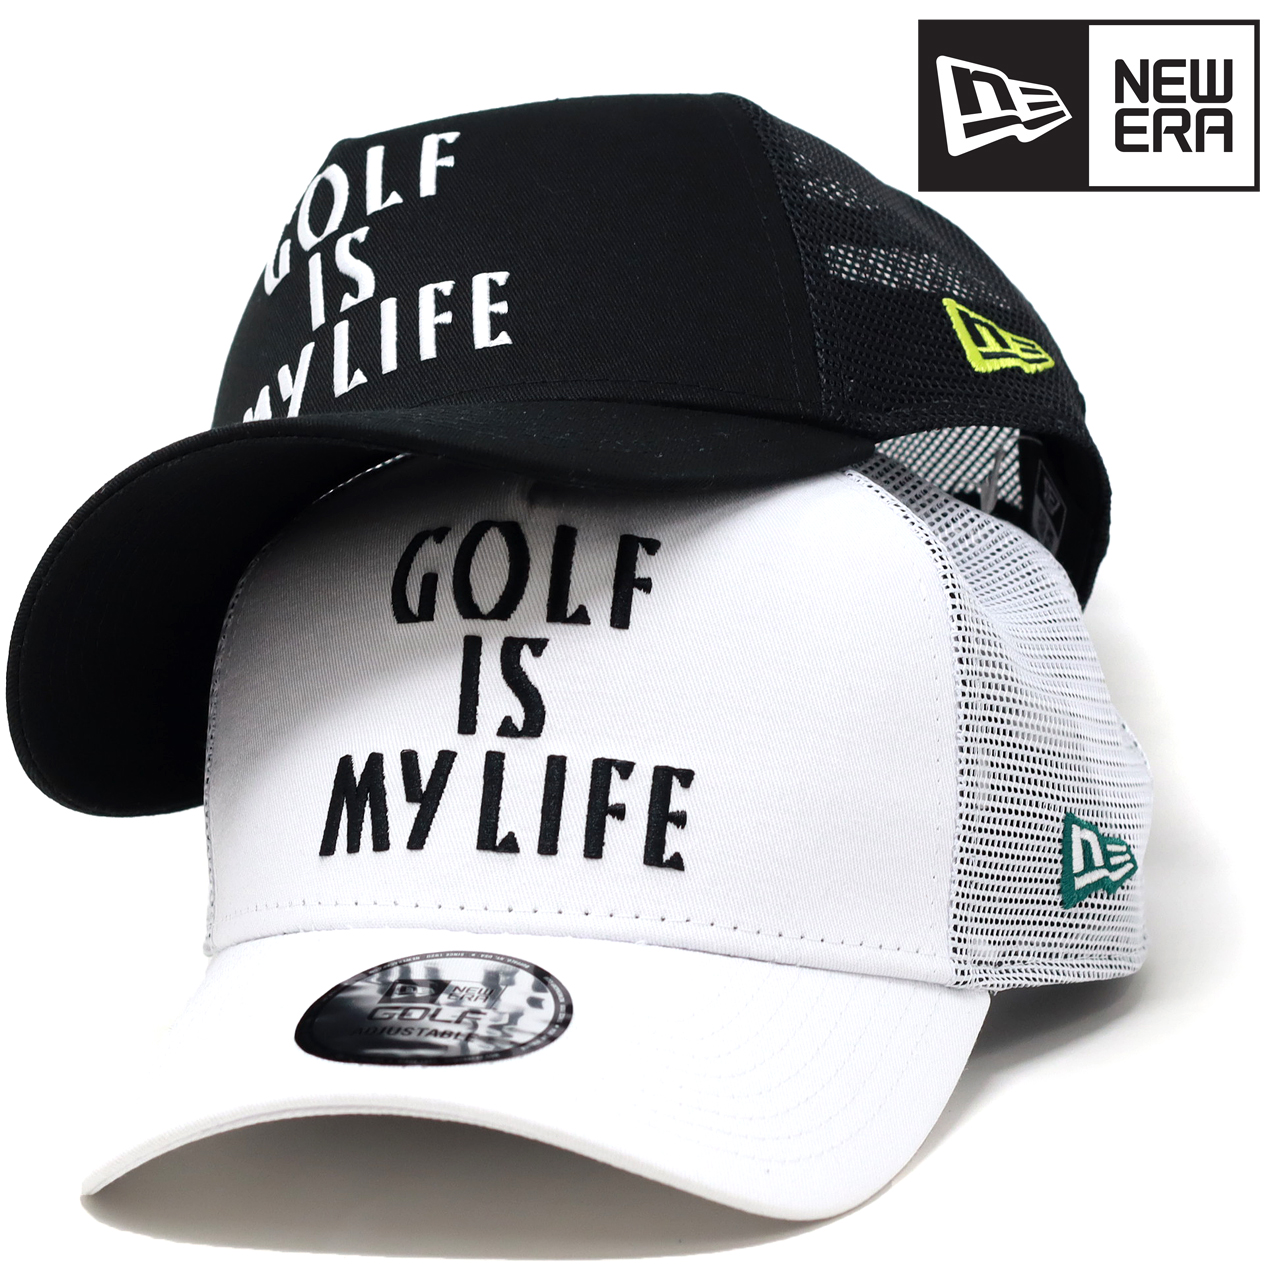 ニューエラ ゴルフ キャップ メンズ メッシュ 9FORTY A-Frame トラッカー Golf is My Life メッシュキャップ 全2色  ブラック ホワイト